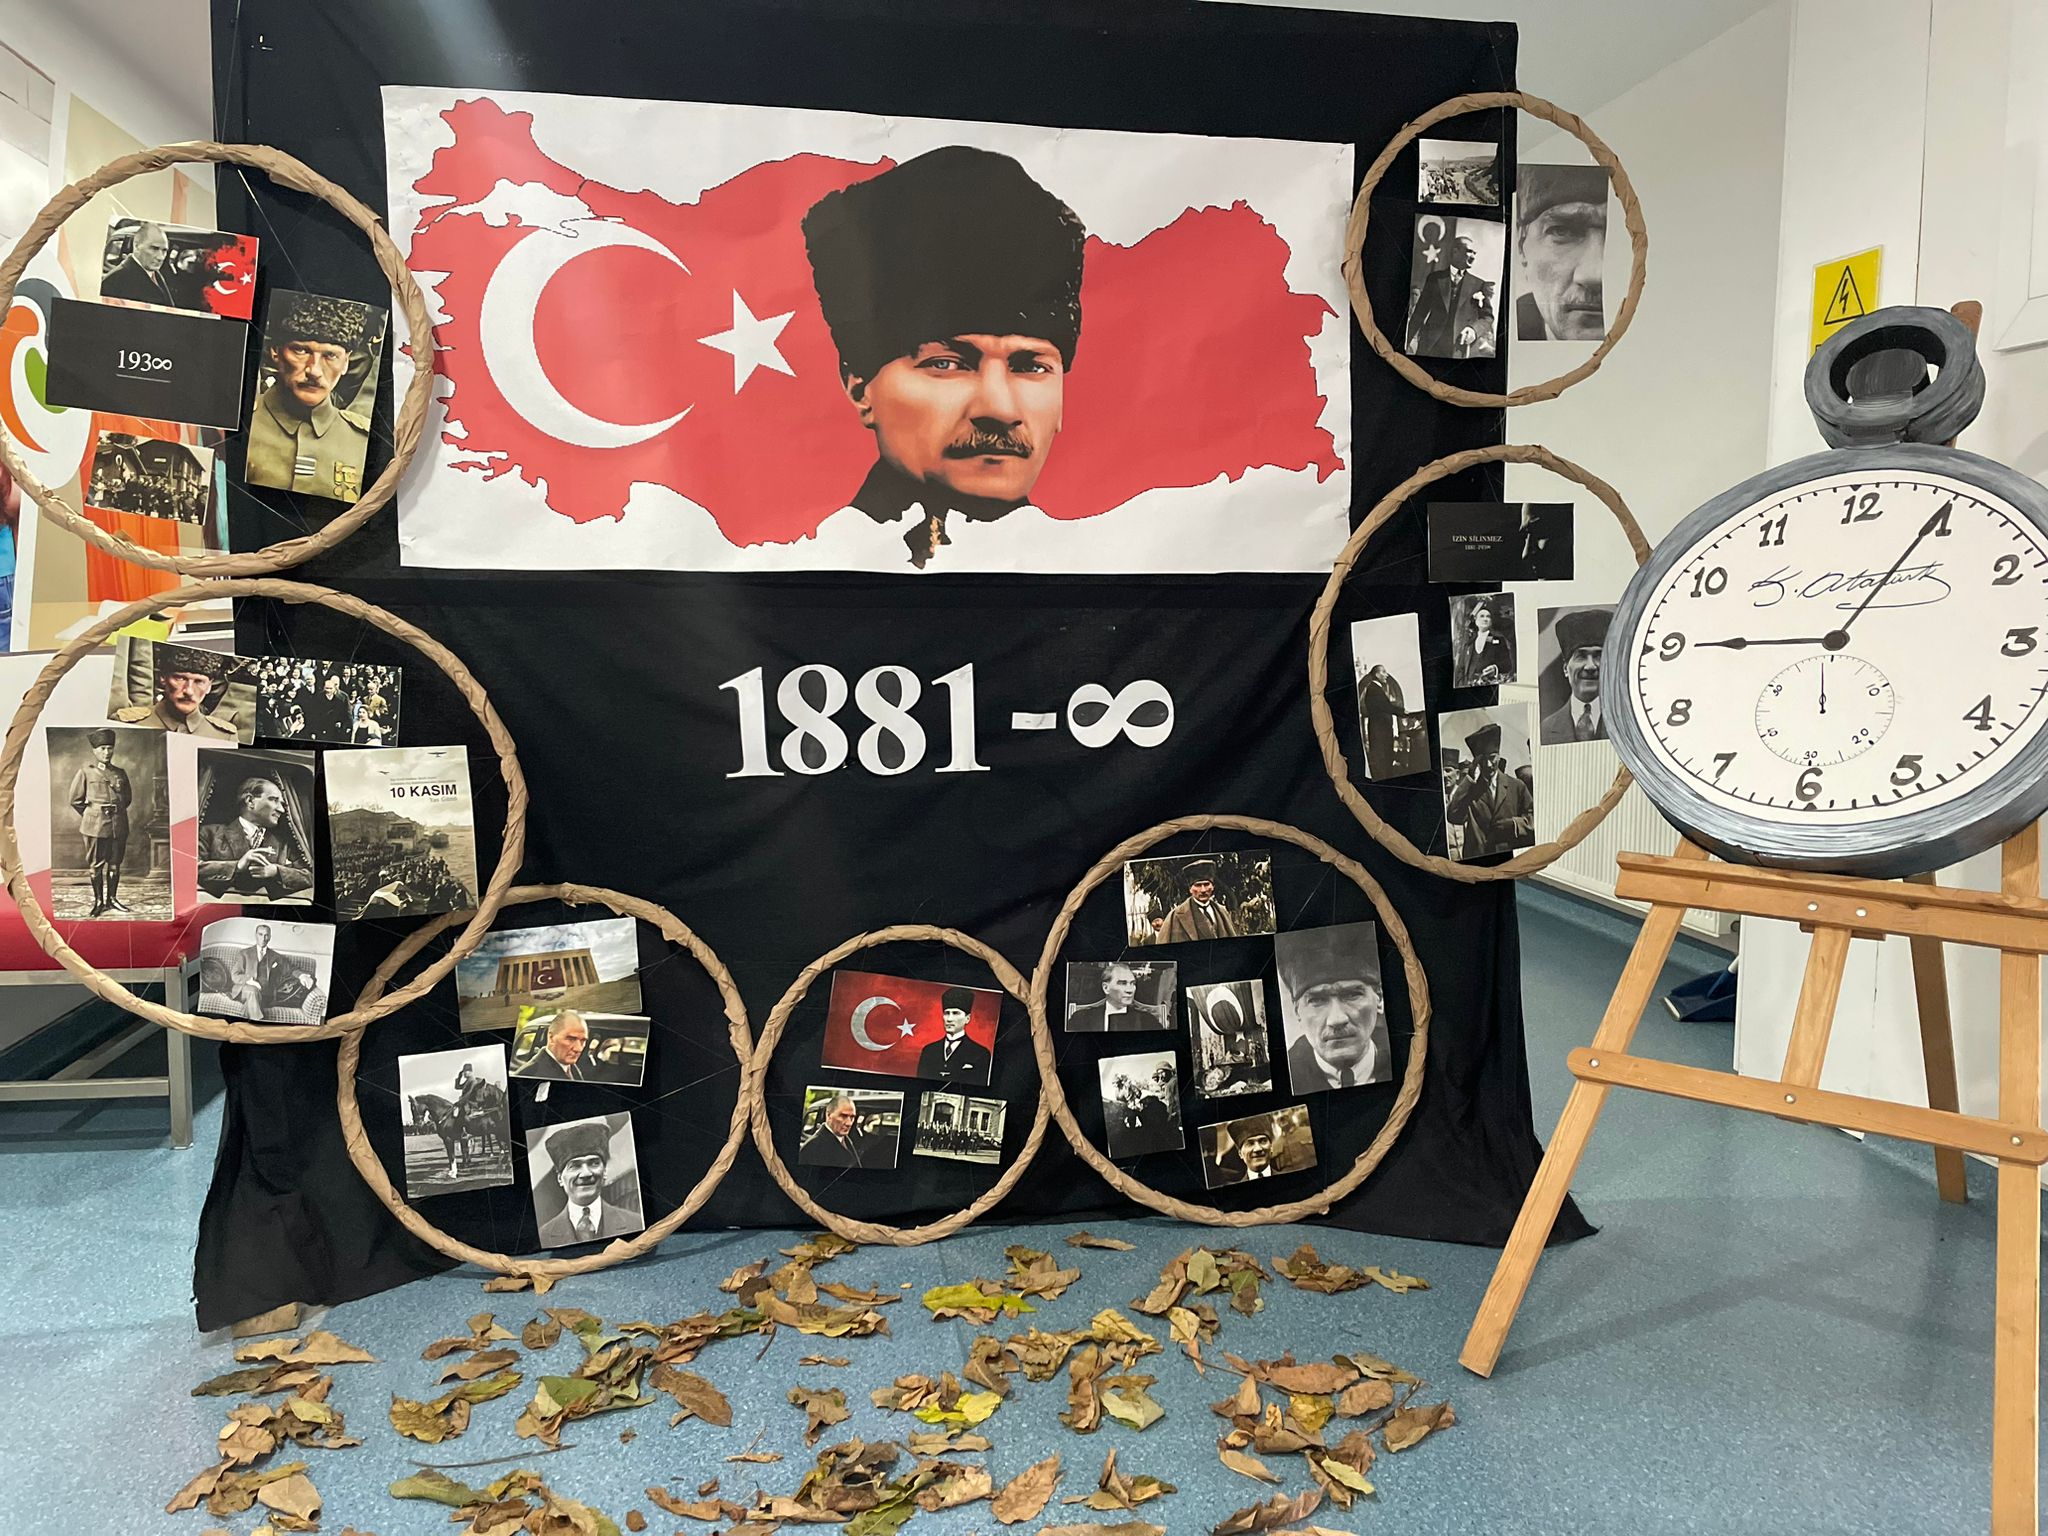 Ulu Önderimiz Mustafa Kemal ATATÜRK'ü saygı, sevgi ve özlemle anıyoruz...